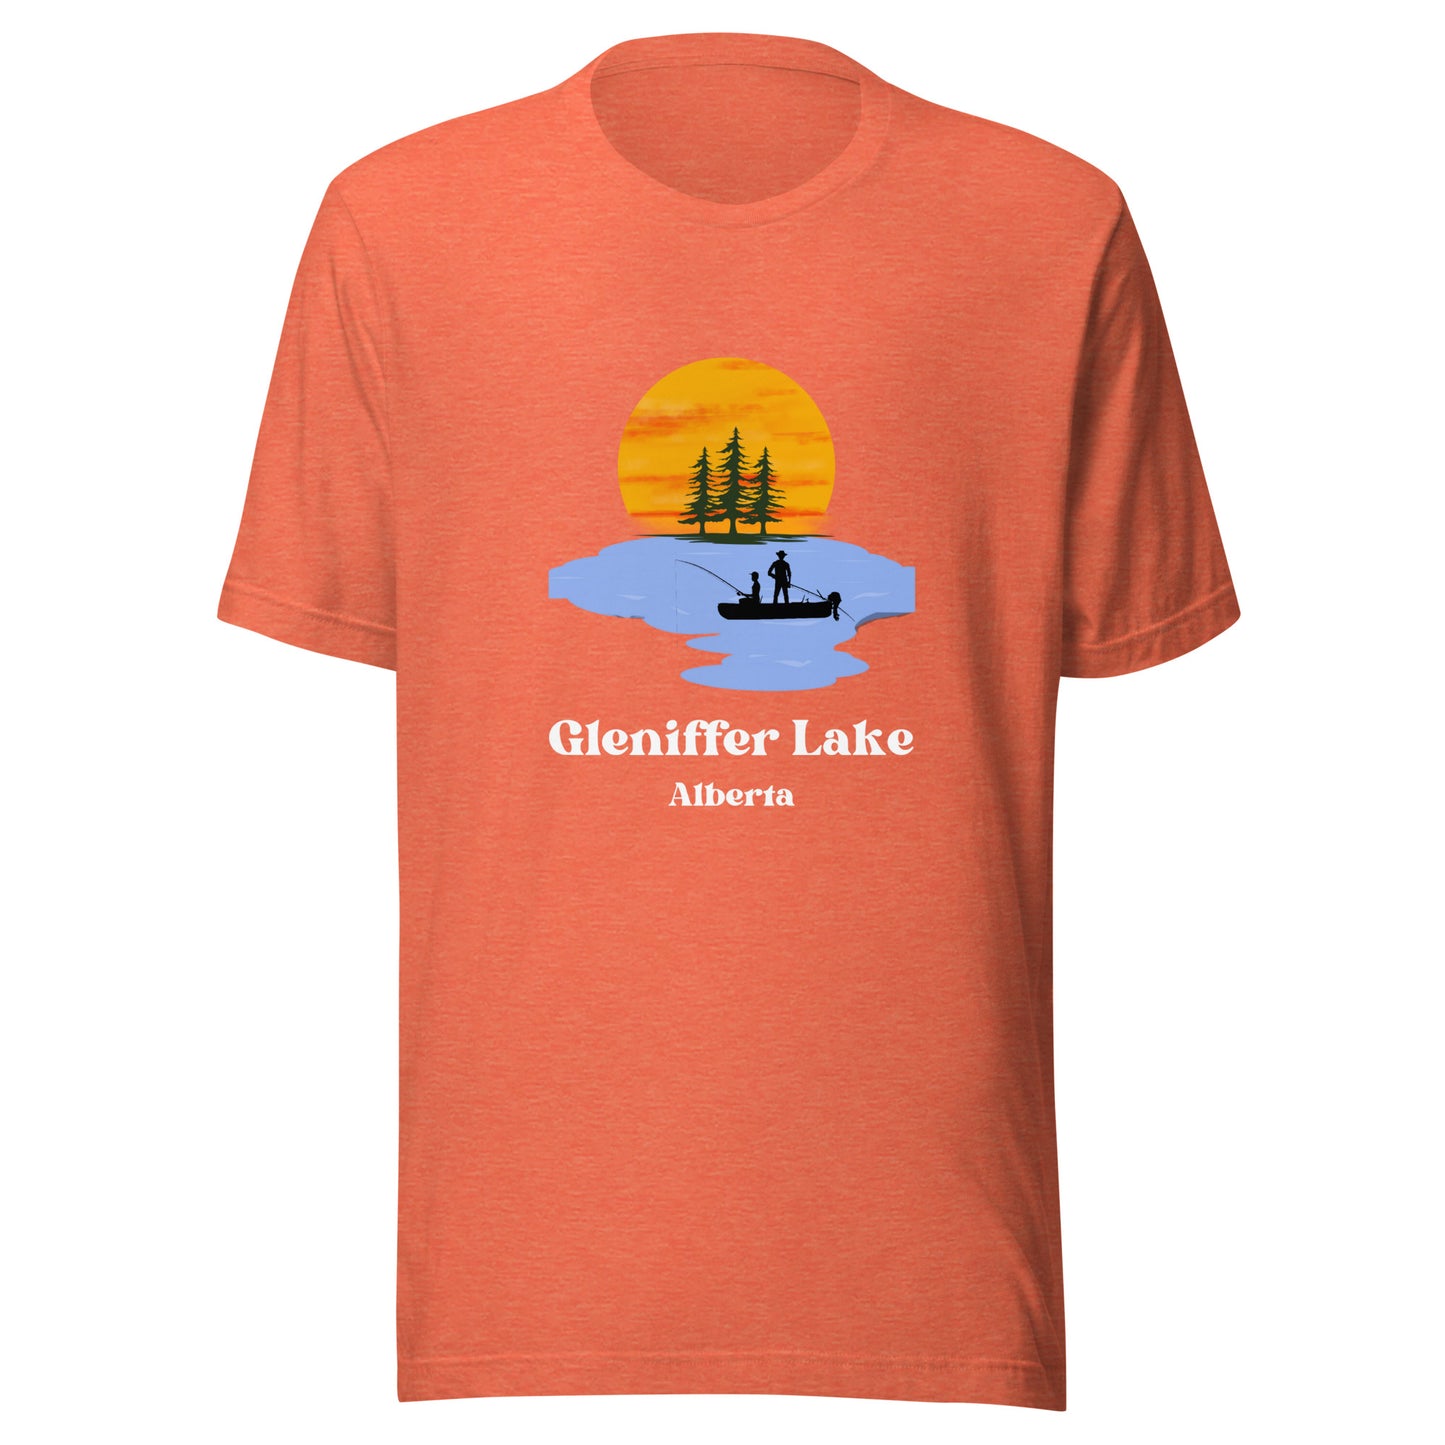 Gleniffer Lake, AB - T-Shirt Fishing